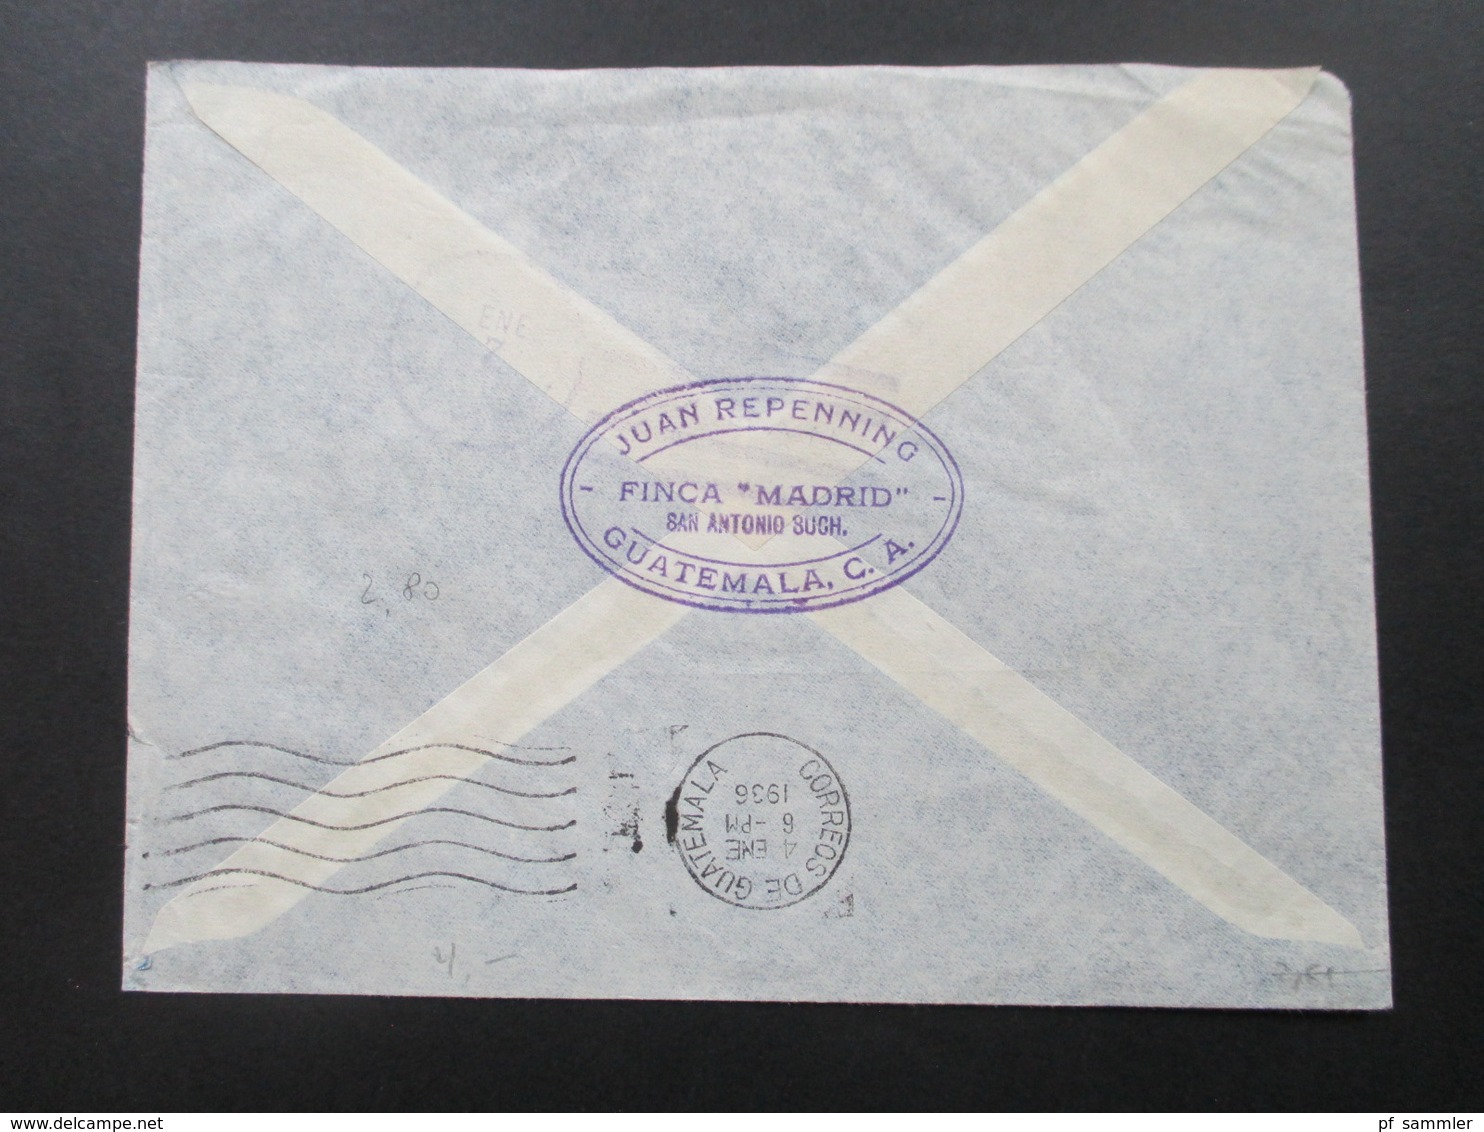 Guatemala 1936 Luftpostbrief. Marken mit rotem und schwarzem Aufdruck! Consul of the internacia Ligo